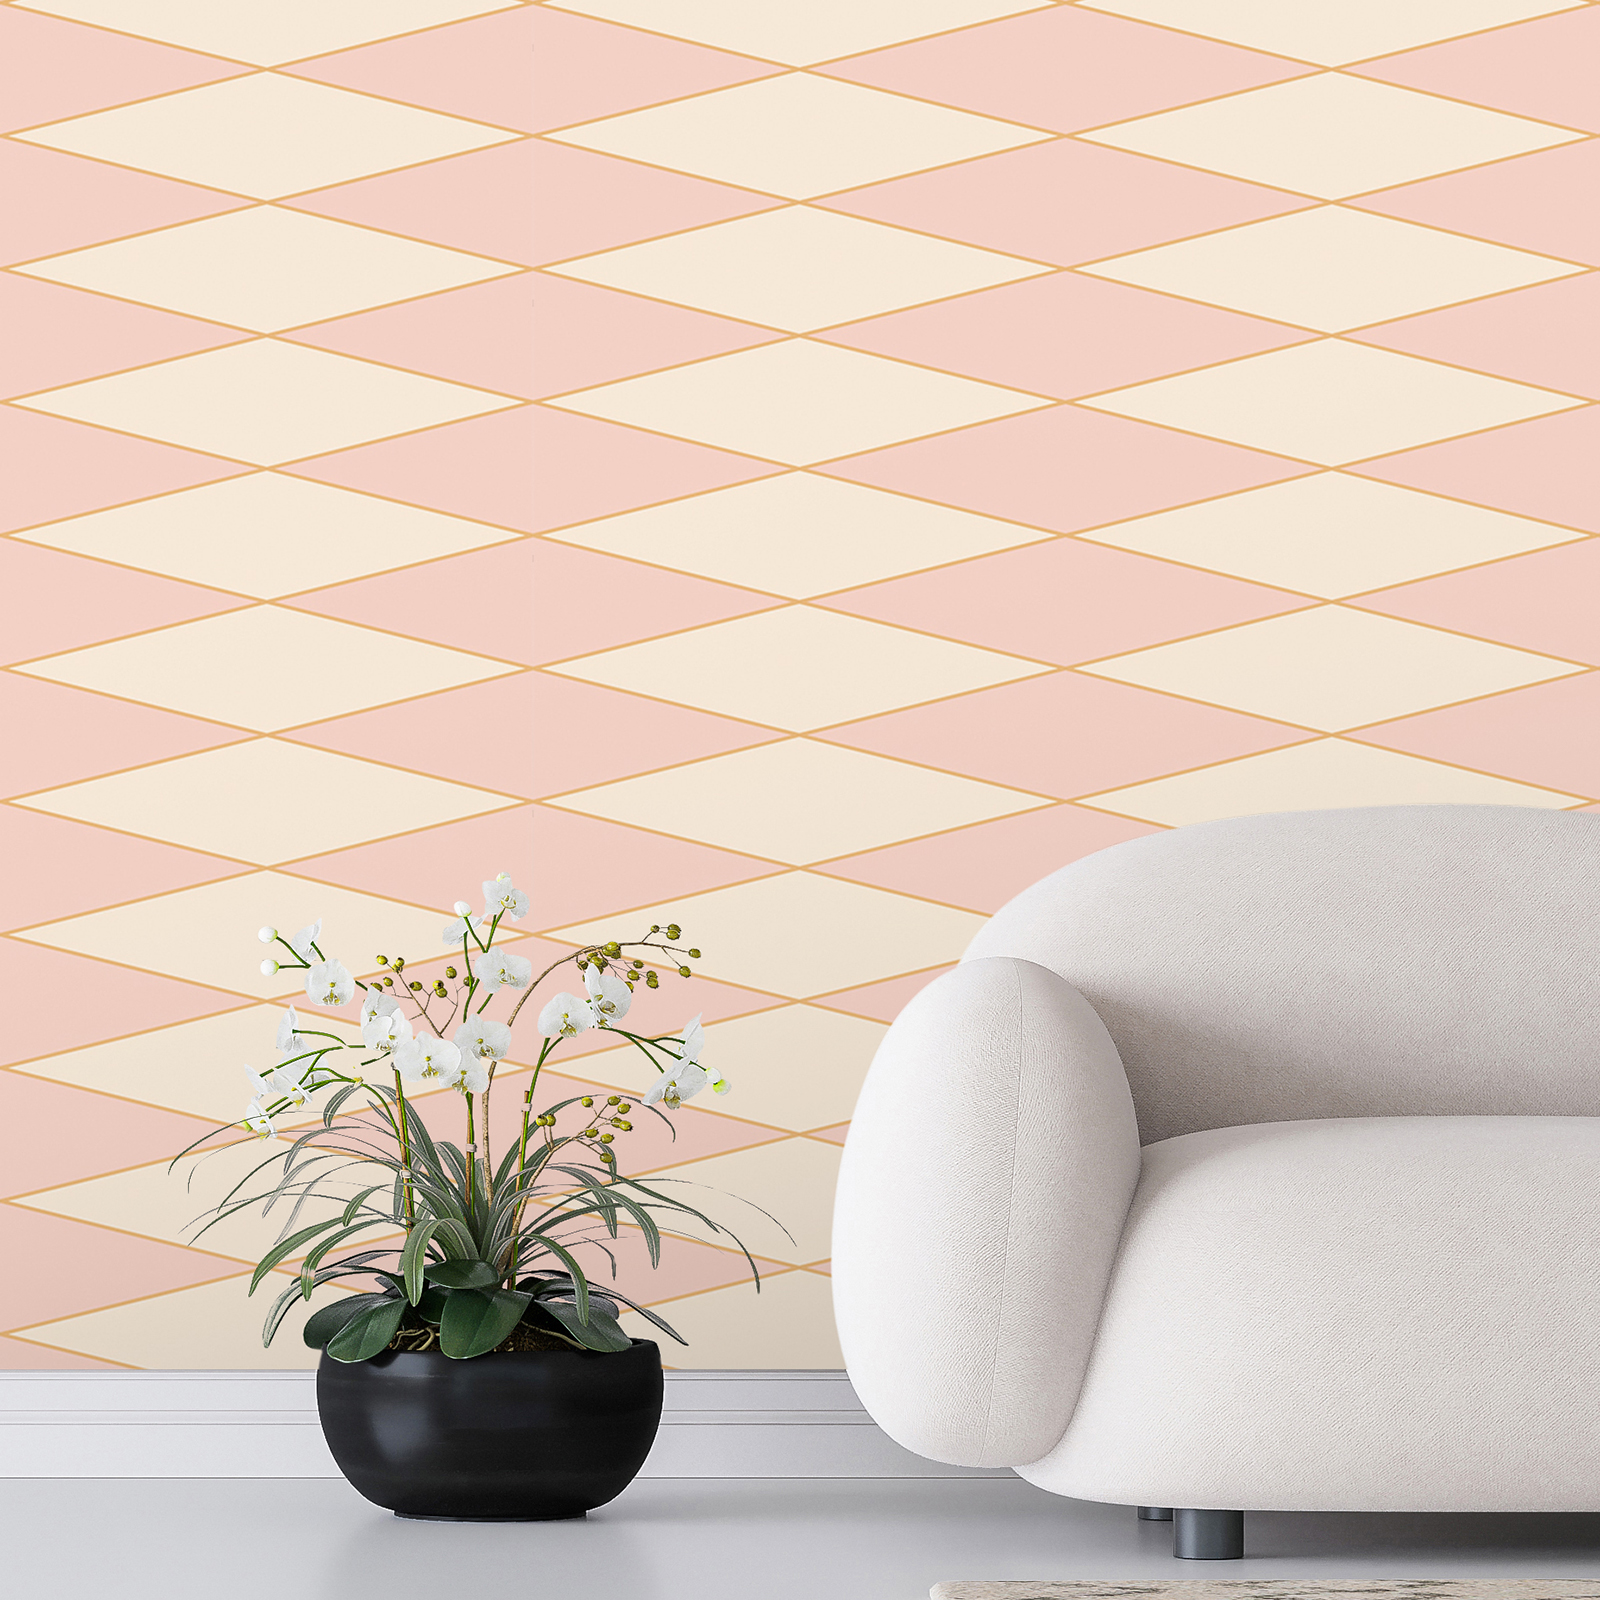 Papier peint panoramique losange style rétro des années 70 - rose, crème, orange | Intissé lisse mat
